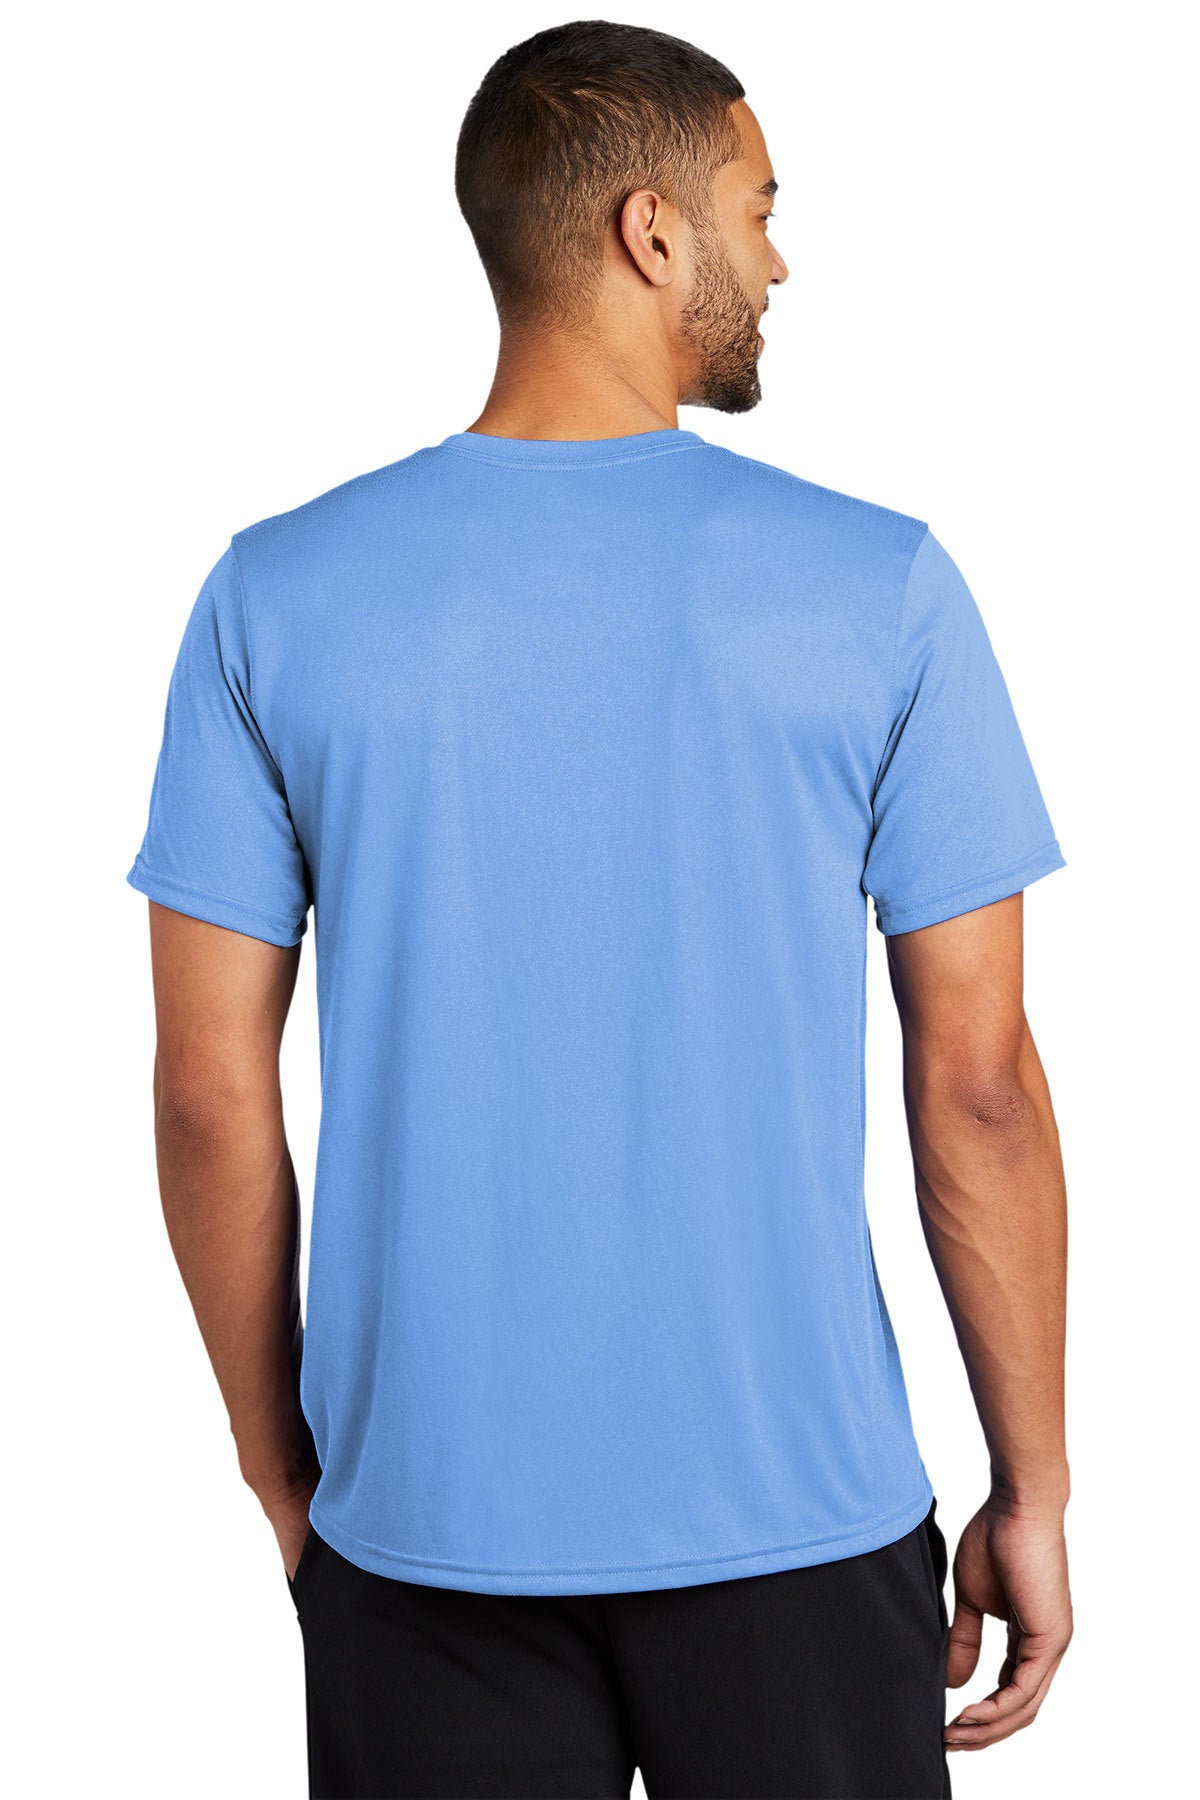 Nike Legend Customized T-Shirts, Valor Blue